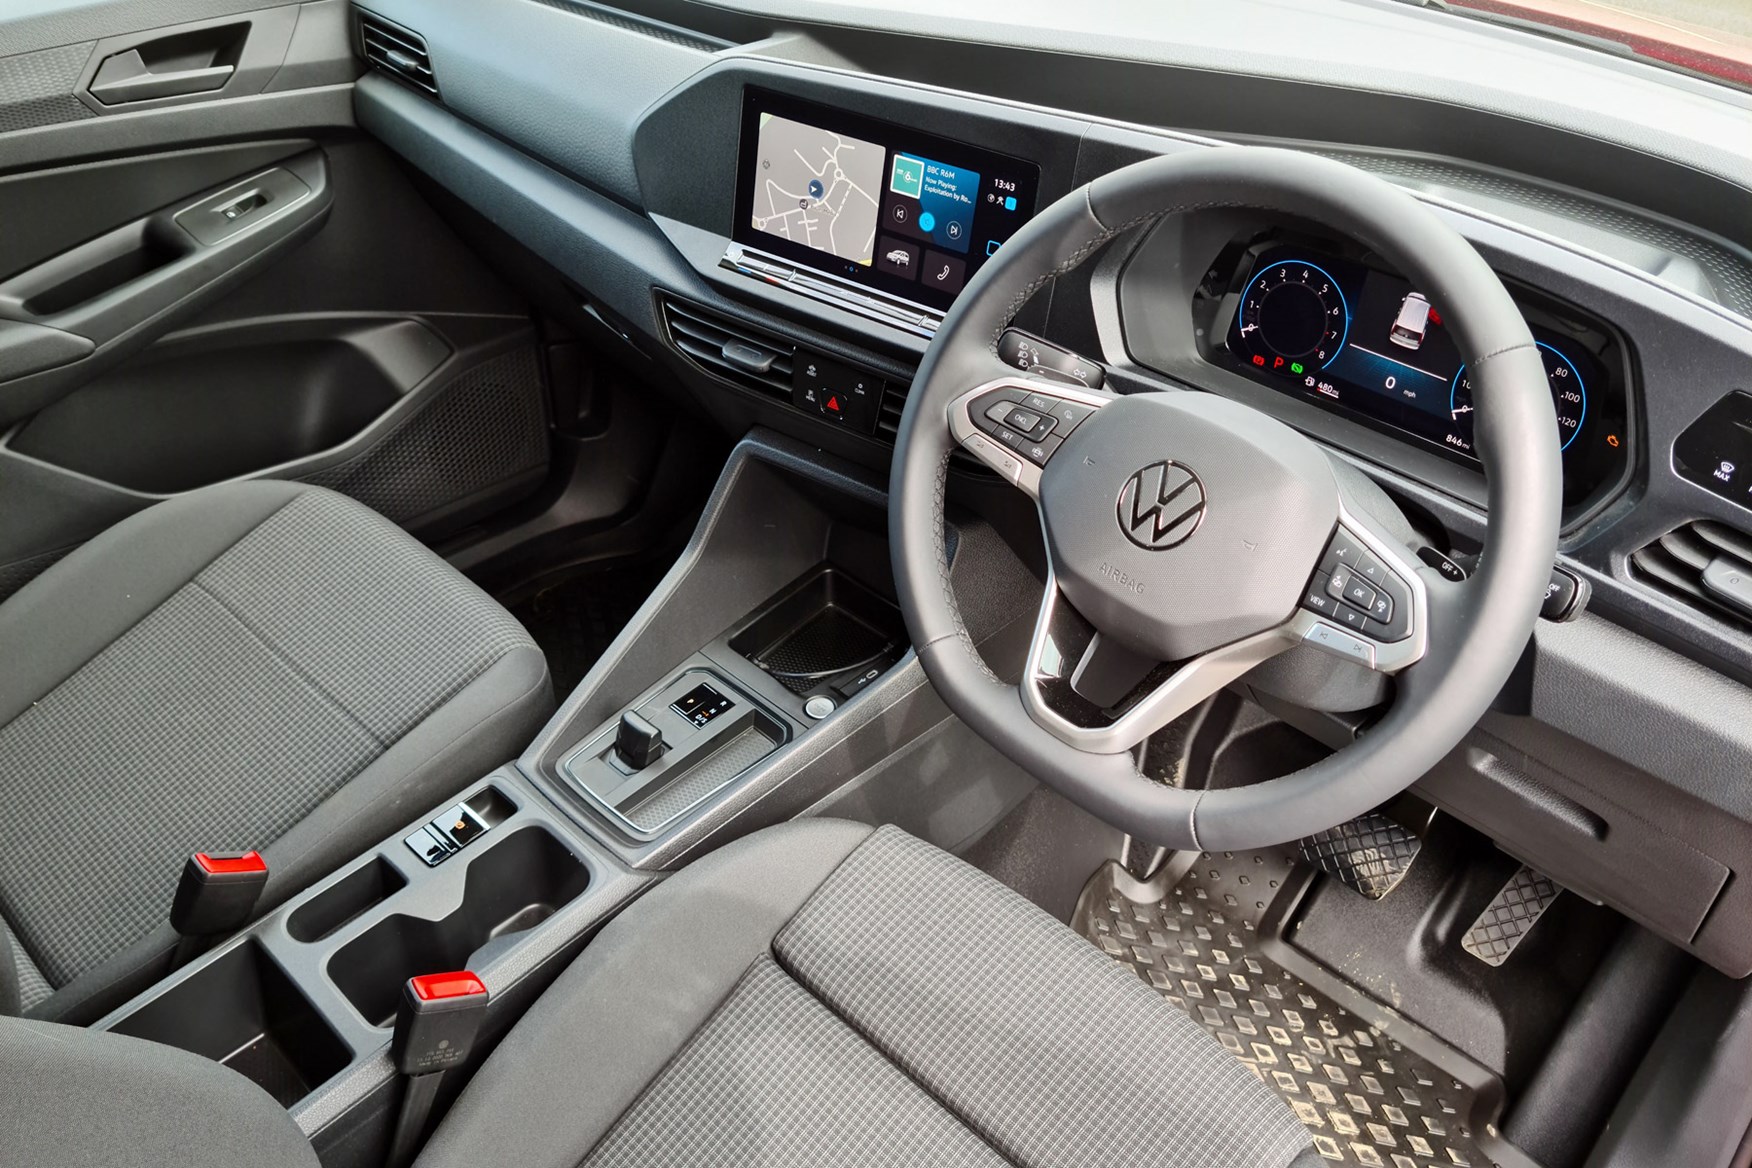 Volkswagen Caddy (2022) Launch Review